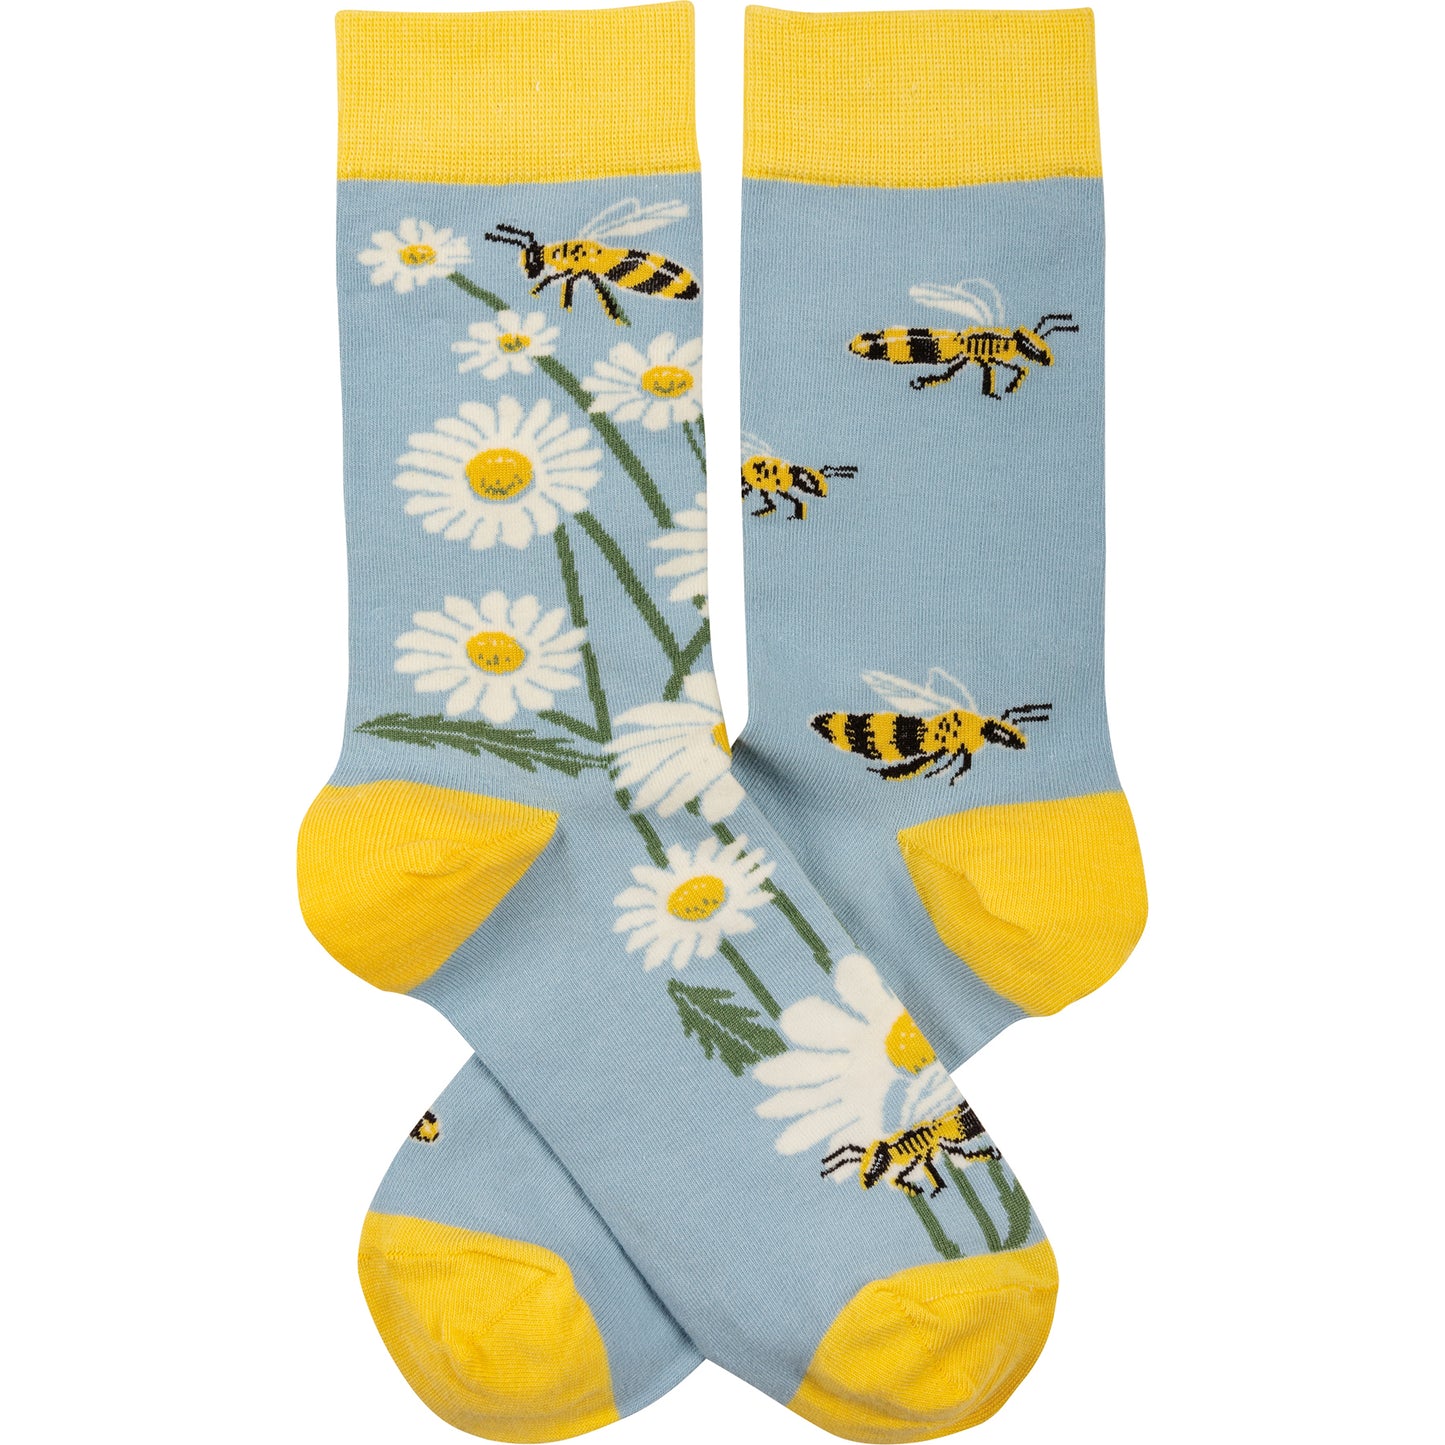 Socks Bees & Daisies 113072